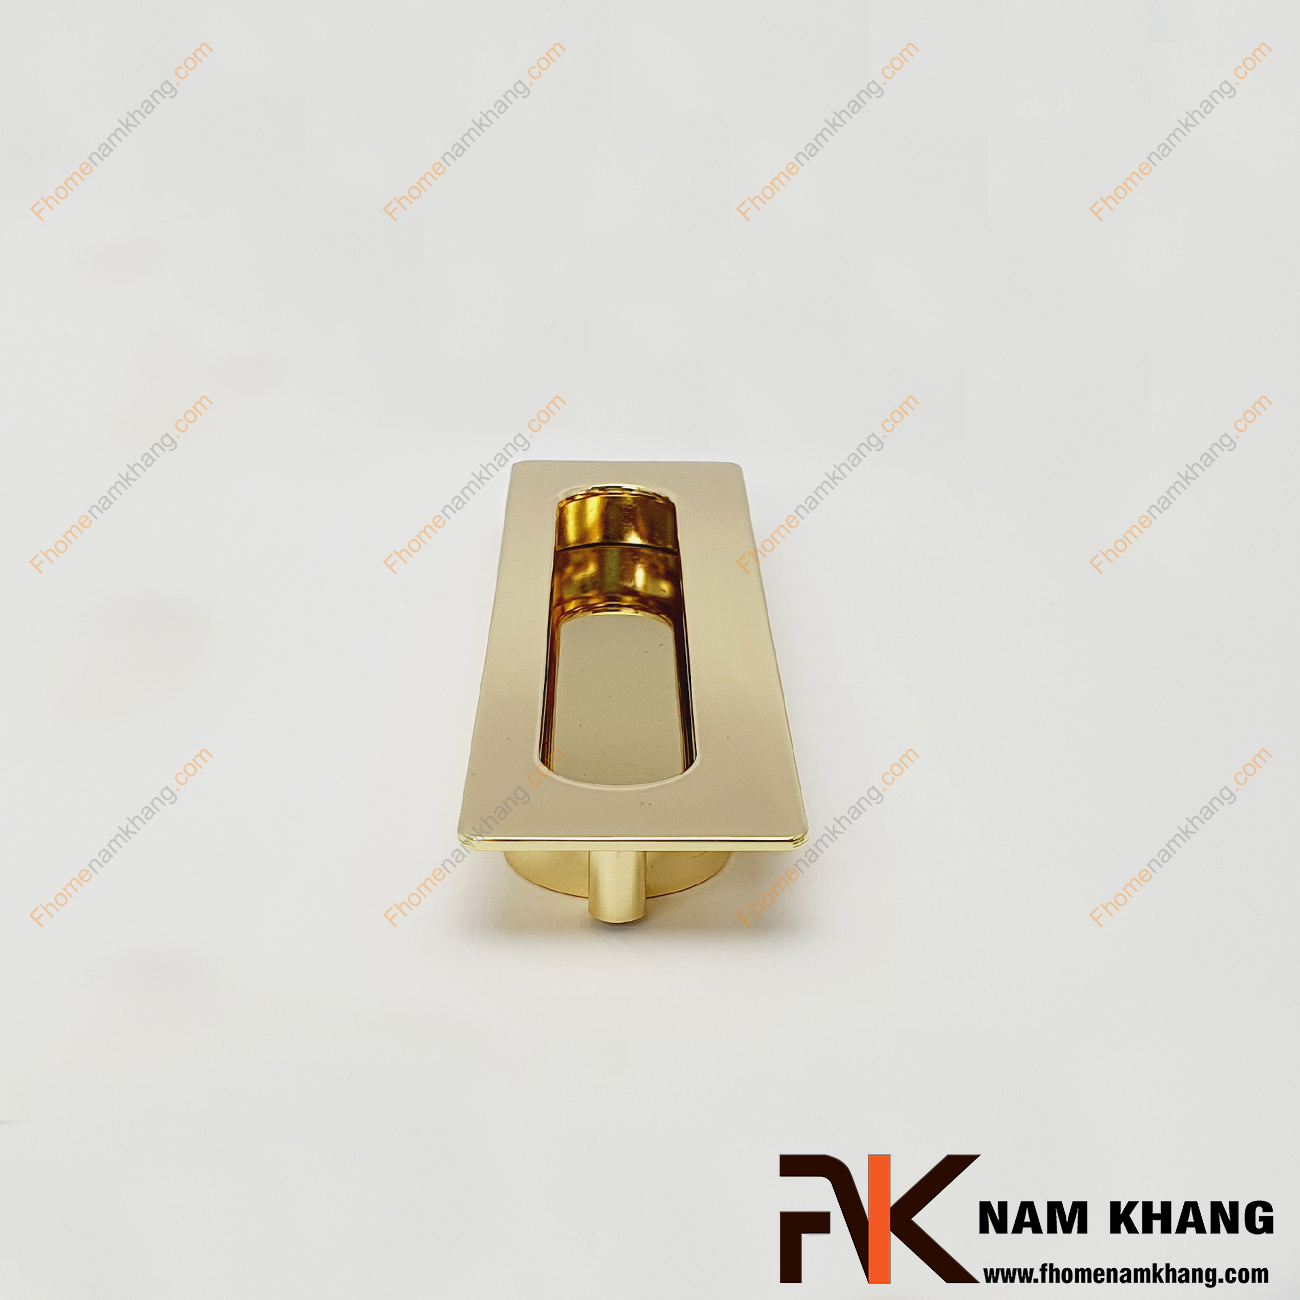 Tay nắm âm tủ màu vàng bóng NK356-V là loại tay nắm chuyên dùng cho các loại tủ đặt ở những nơi có không gian hạn chế hoặc dùng để nâng cao tính thẫm mỹ của sản phẩm